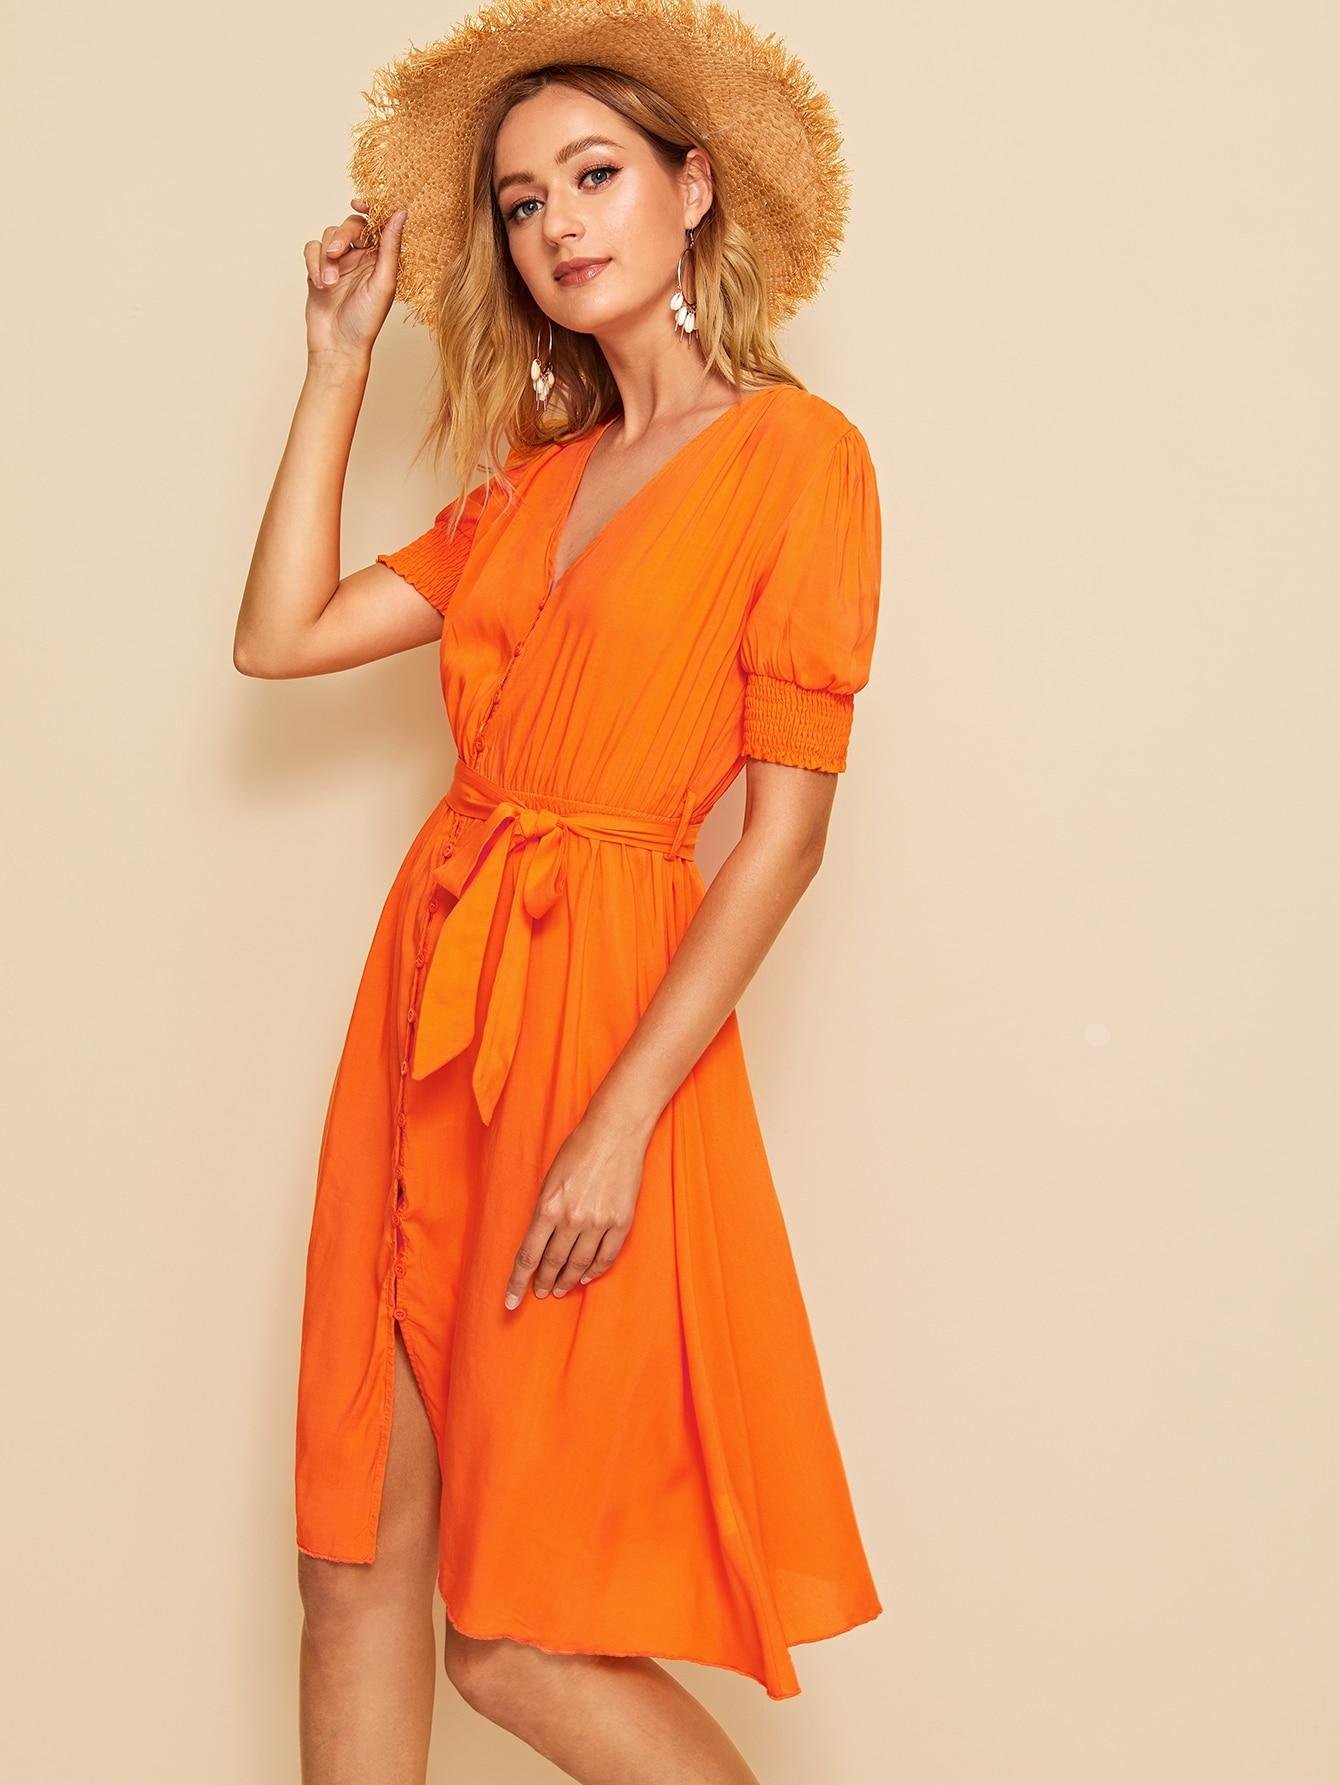 оранжевое платье с чем носить фото